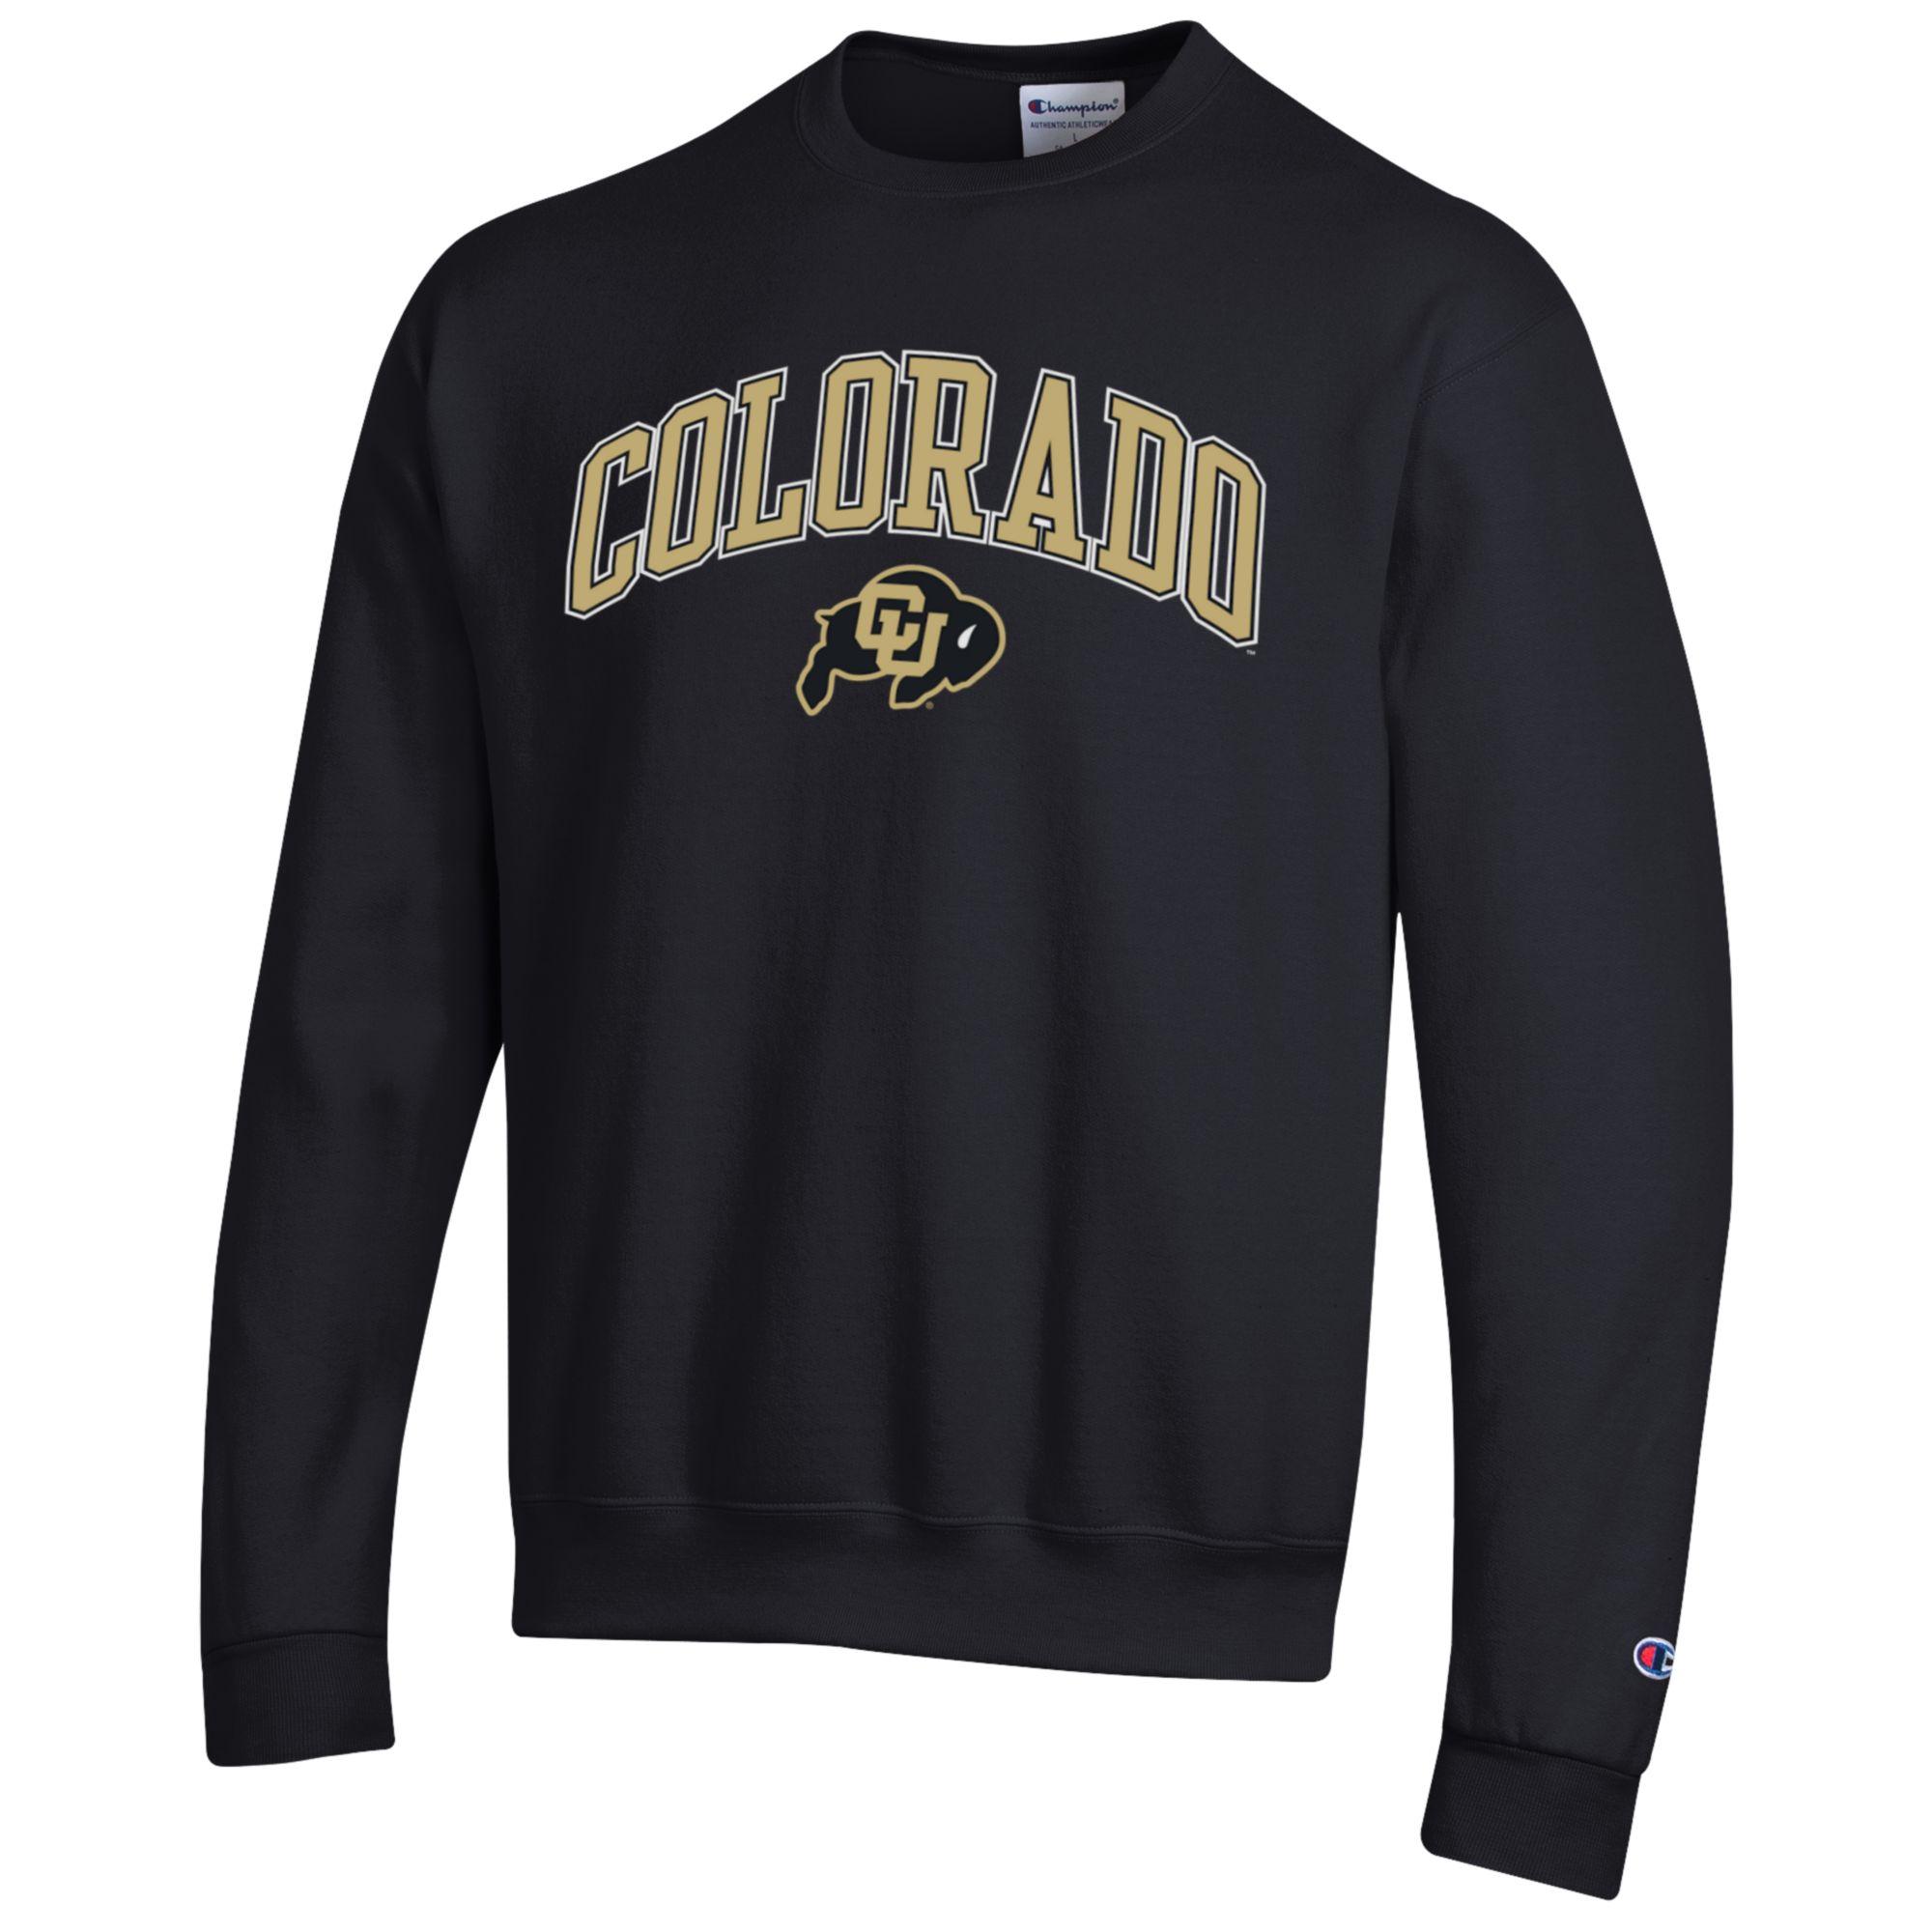 Colorado Buffalos crewneck Sweatshirt Black